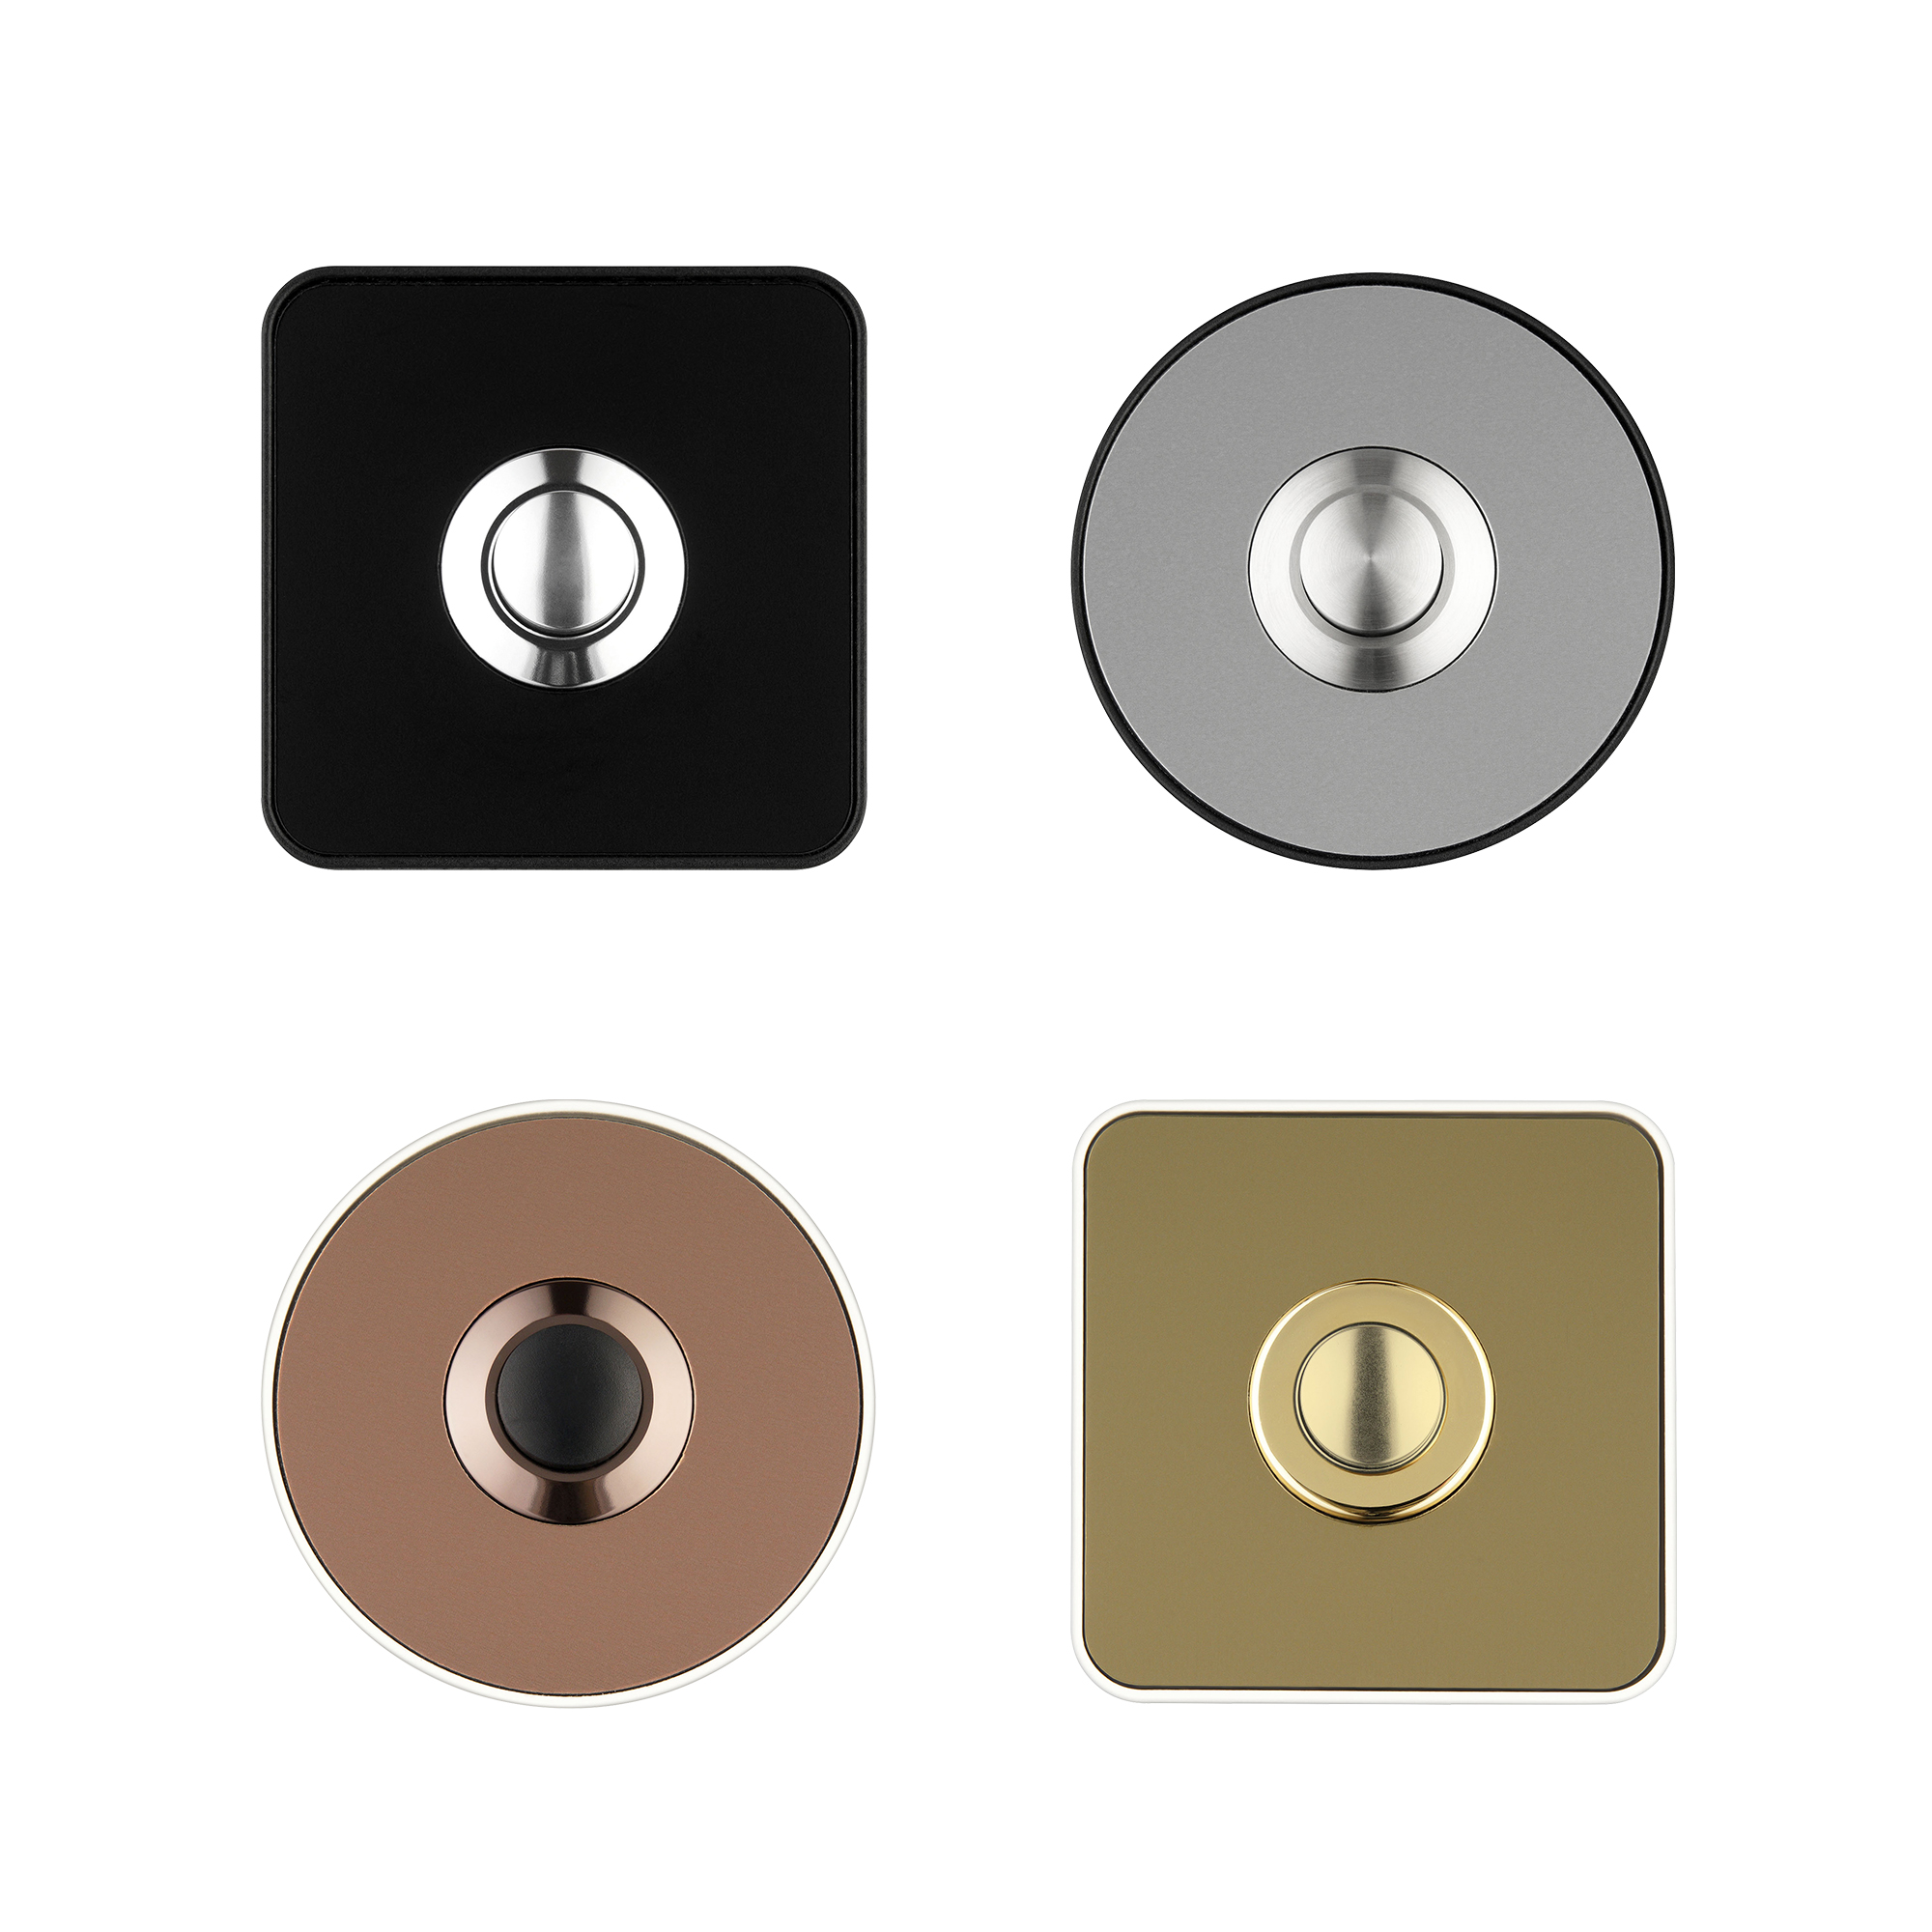 Klingeltaster Piccolo in Schwarz, Kupfer, Gold und Edelstahl Farben